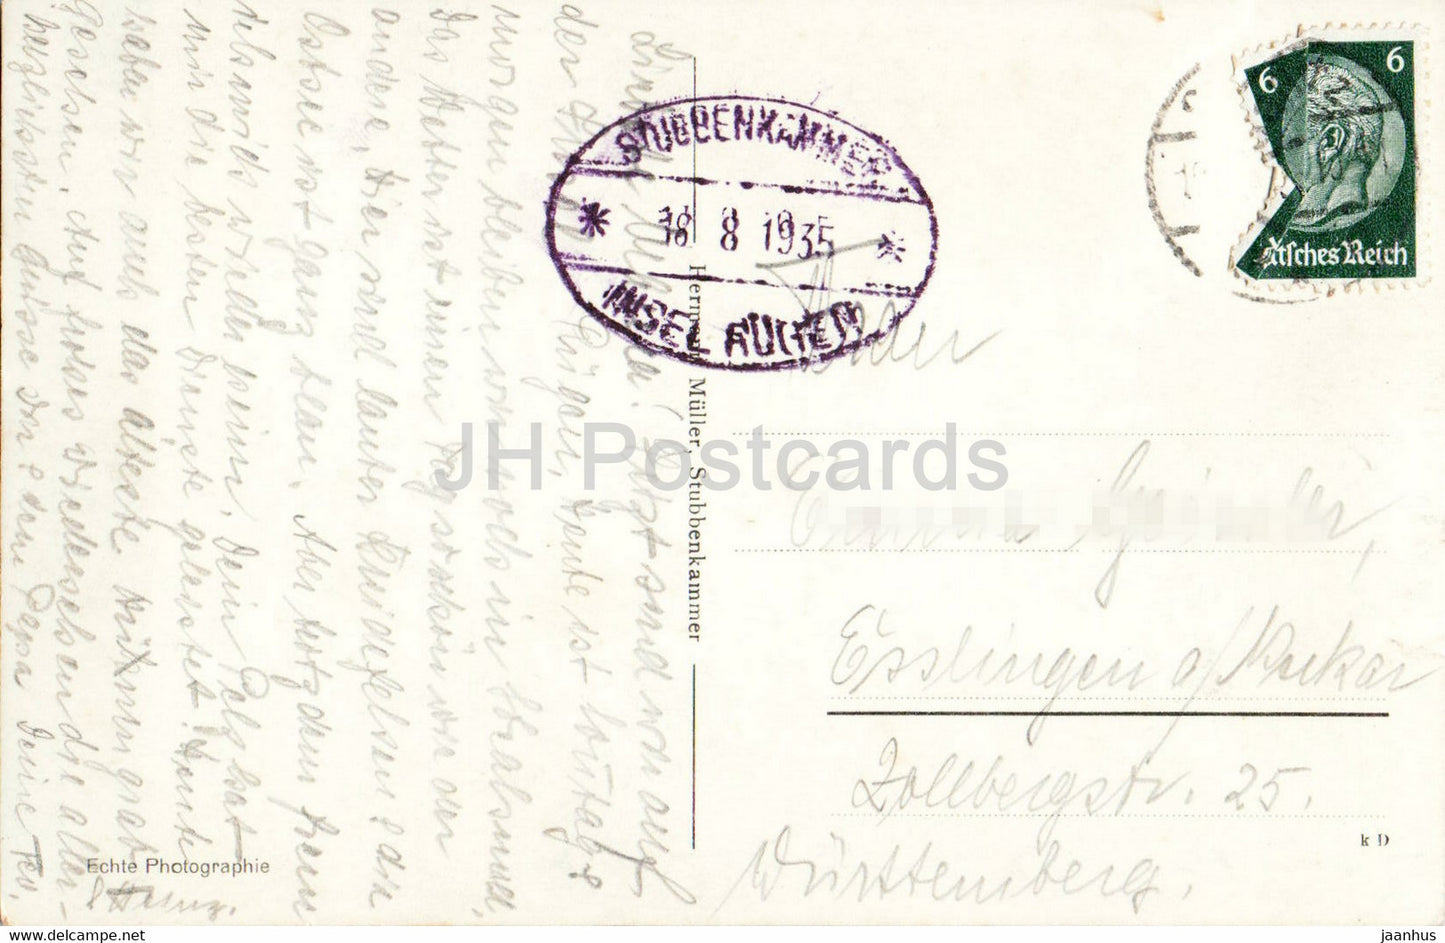 Rugen - Partie am Hengst - 22882 - carte postale ancienne - 1907 - Allemagne - utilisé